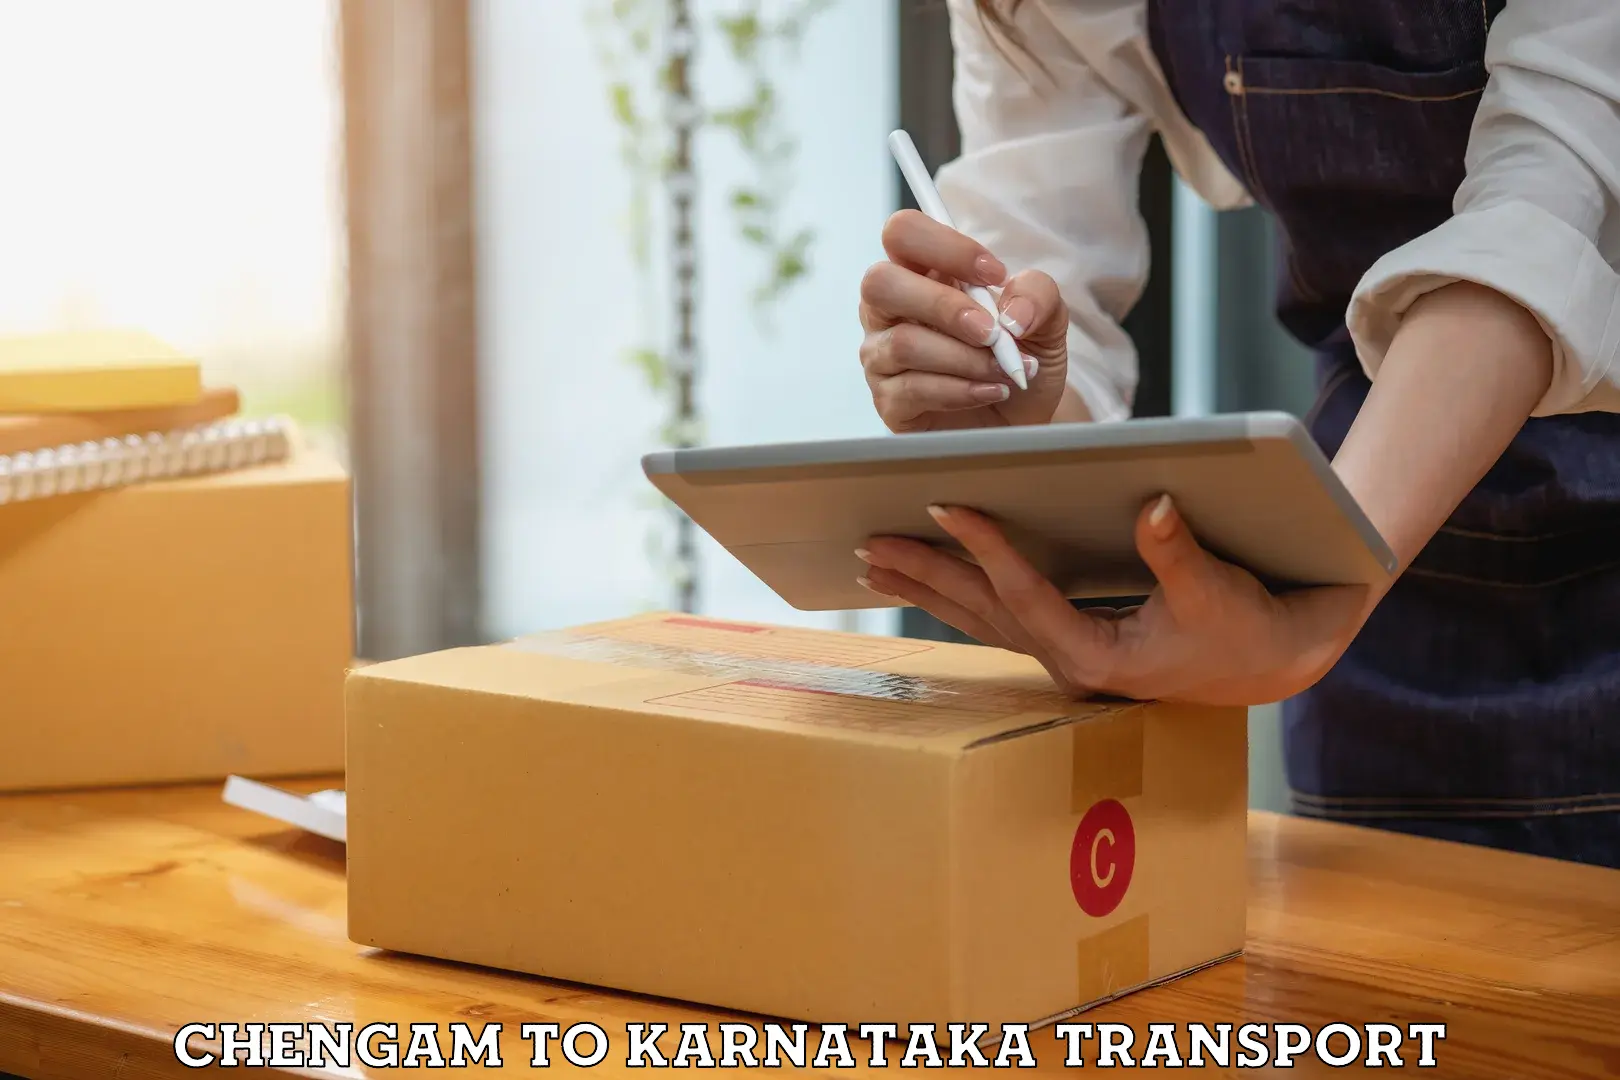 Shipping partner Chengam to Karnataka